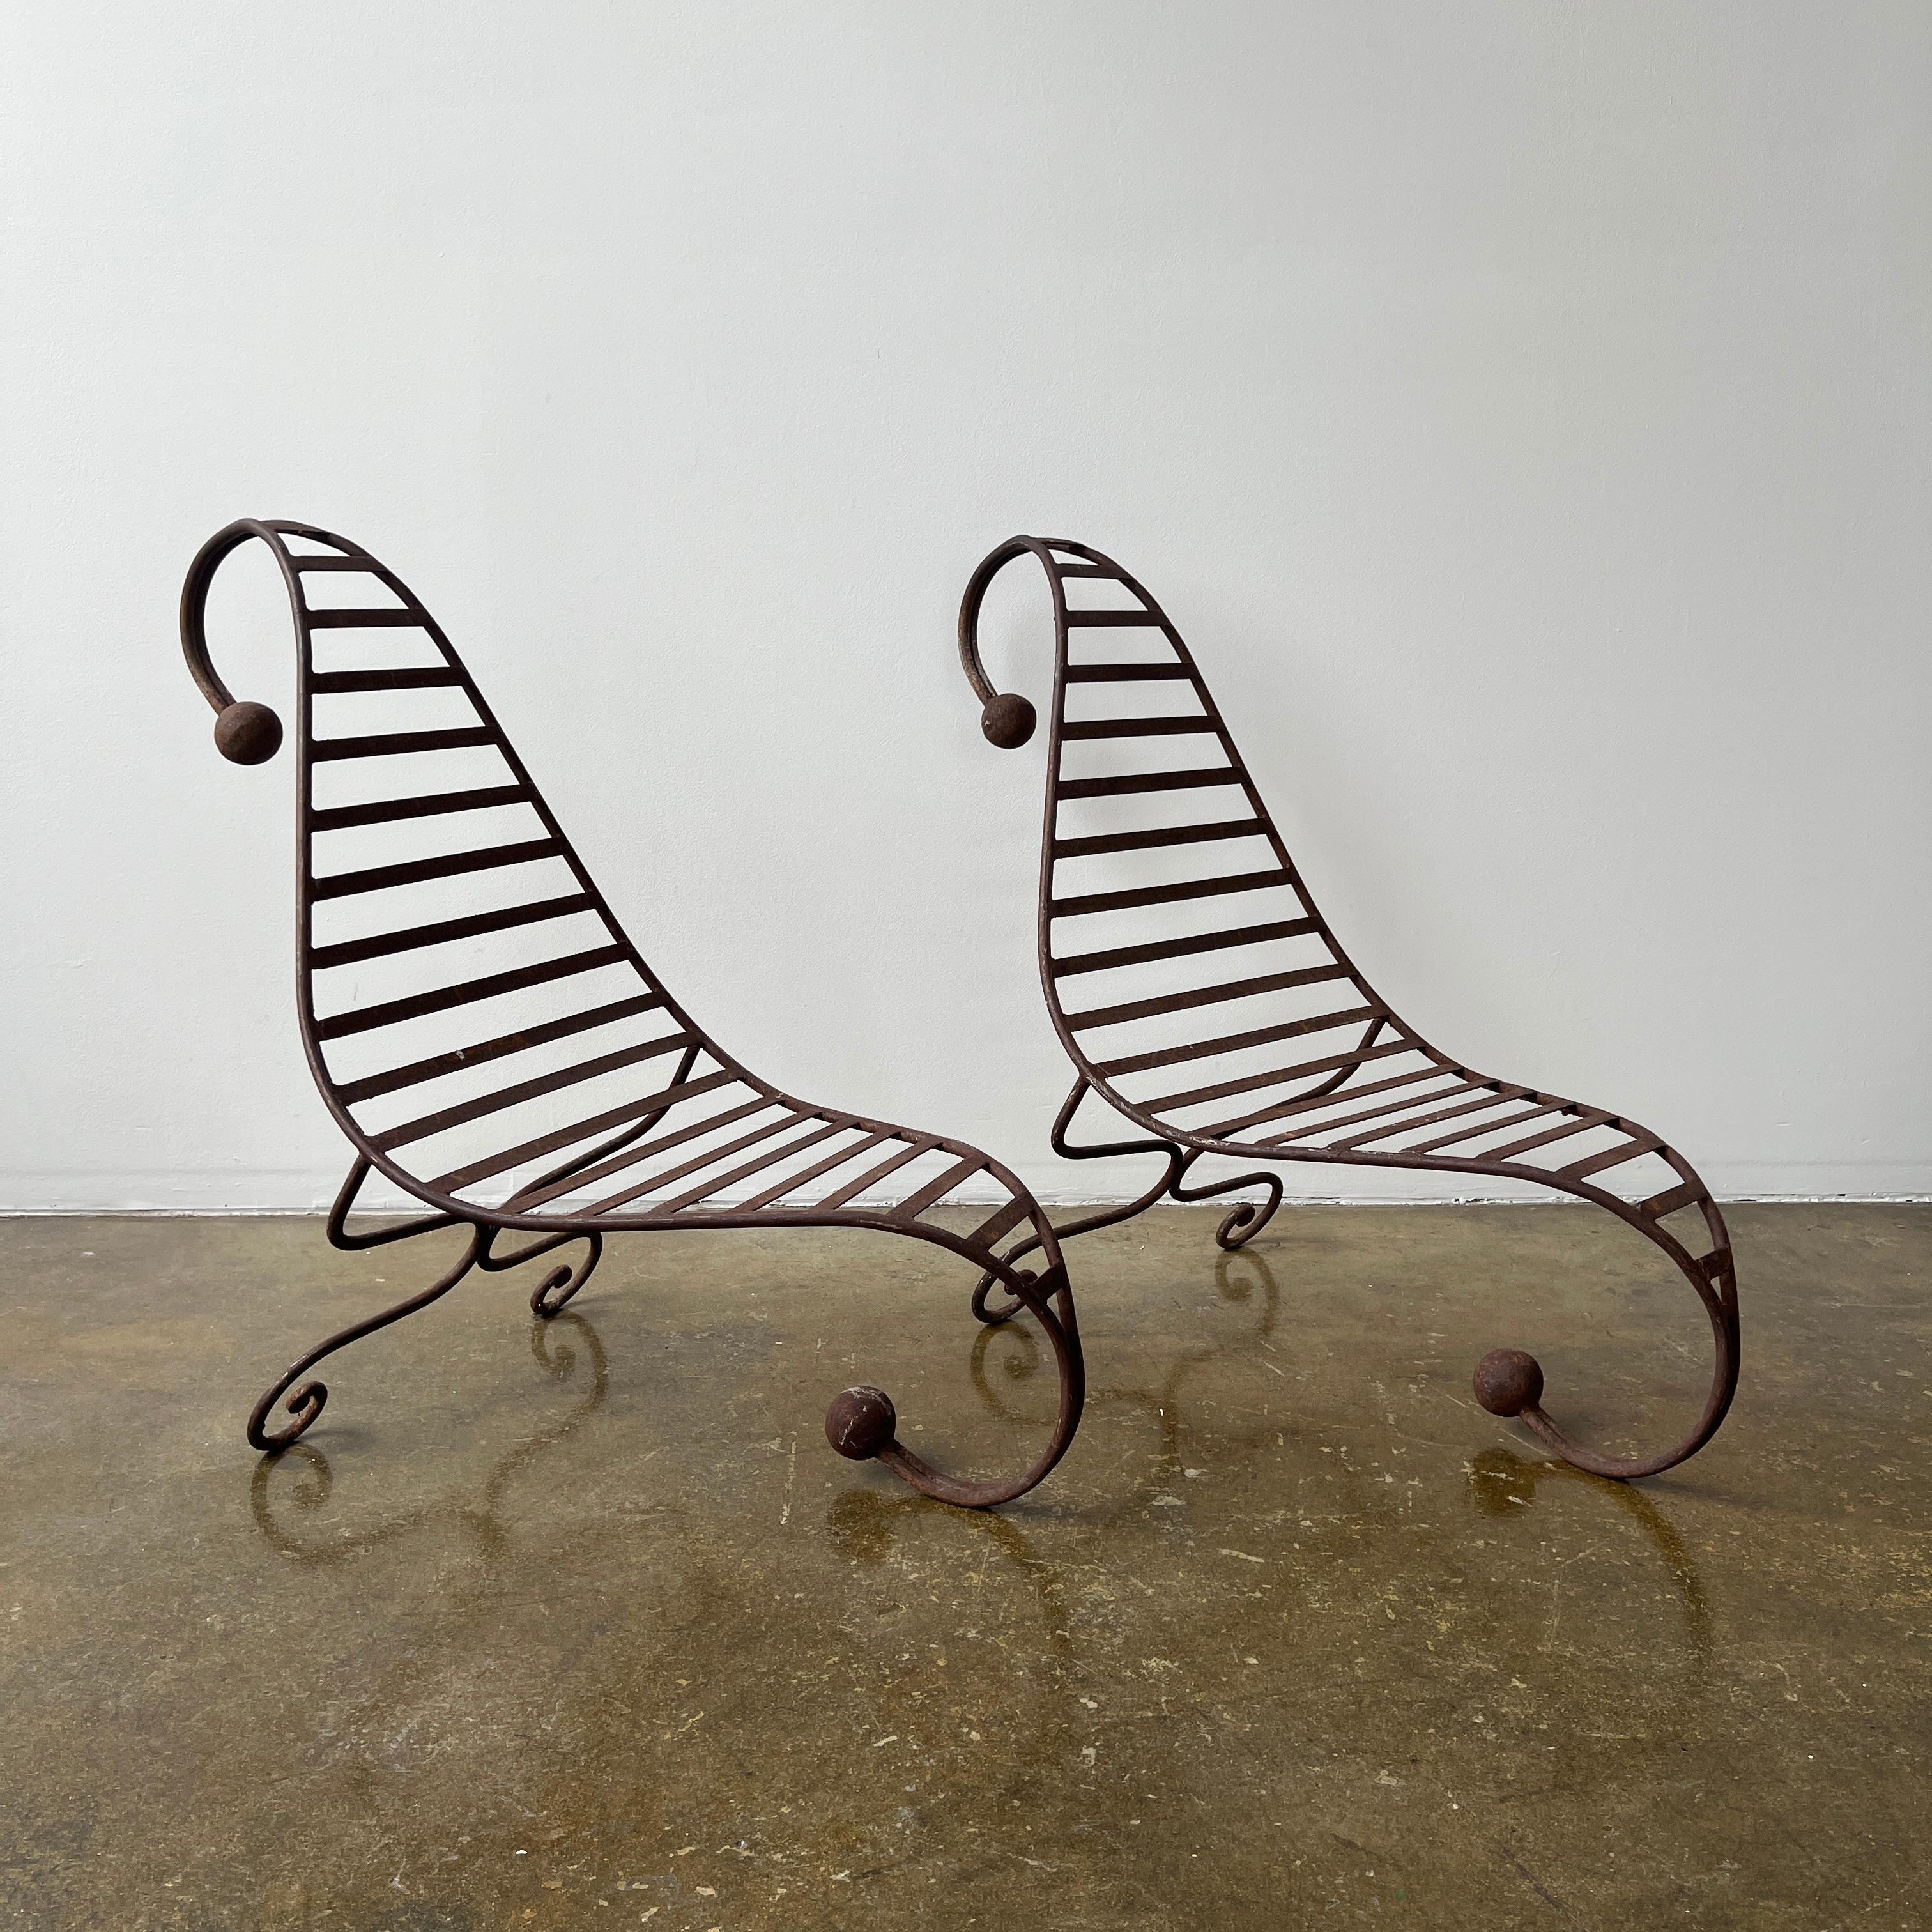 Post-Modern Sculptural Outdoor Iron Chairs